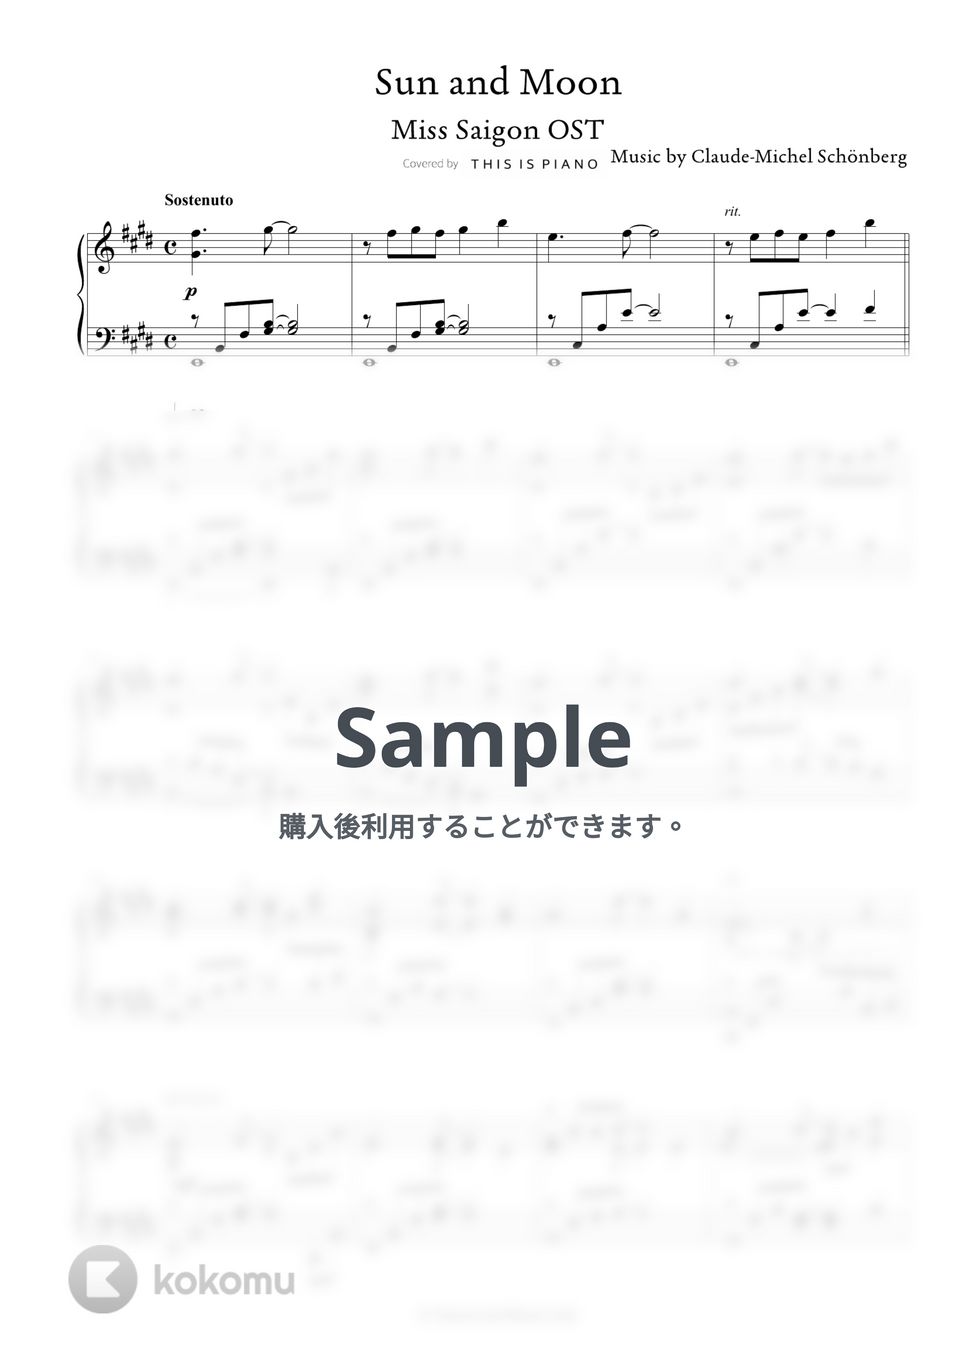 ミス・サイゴンOST - サン・アンド・ムーン by THIS IS PIANO